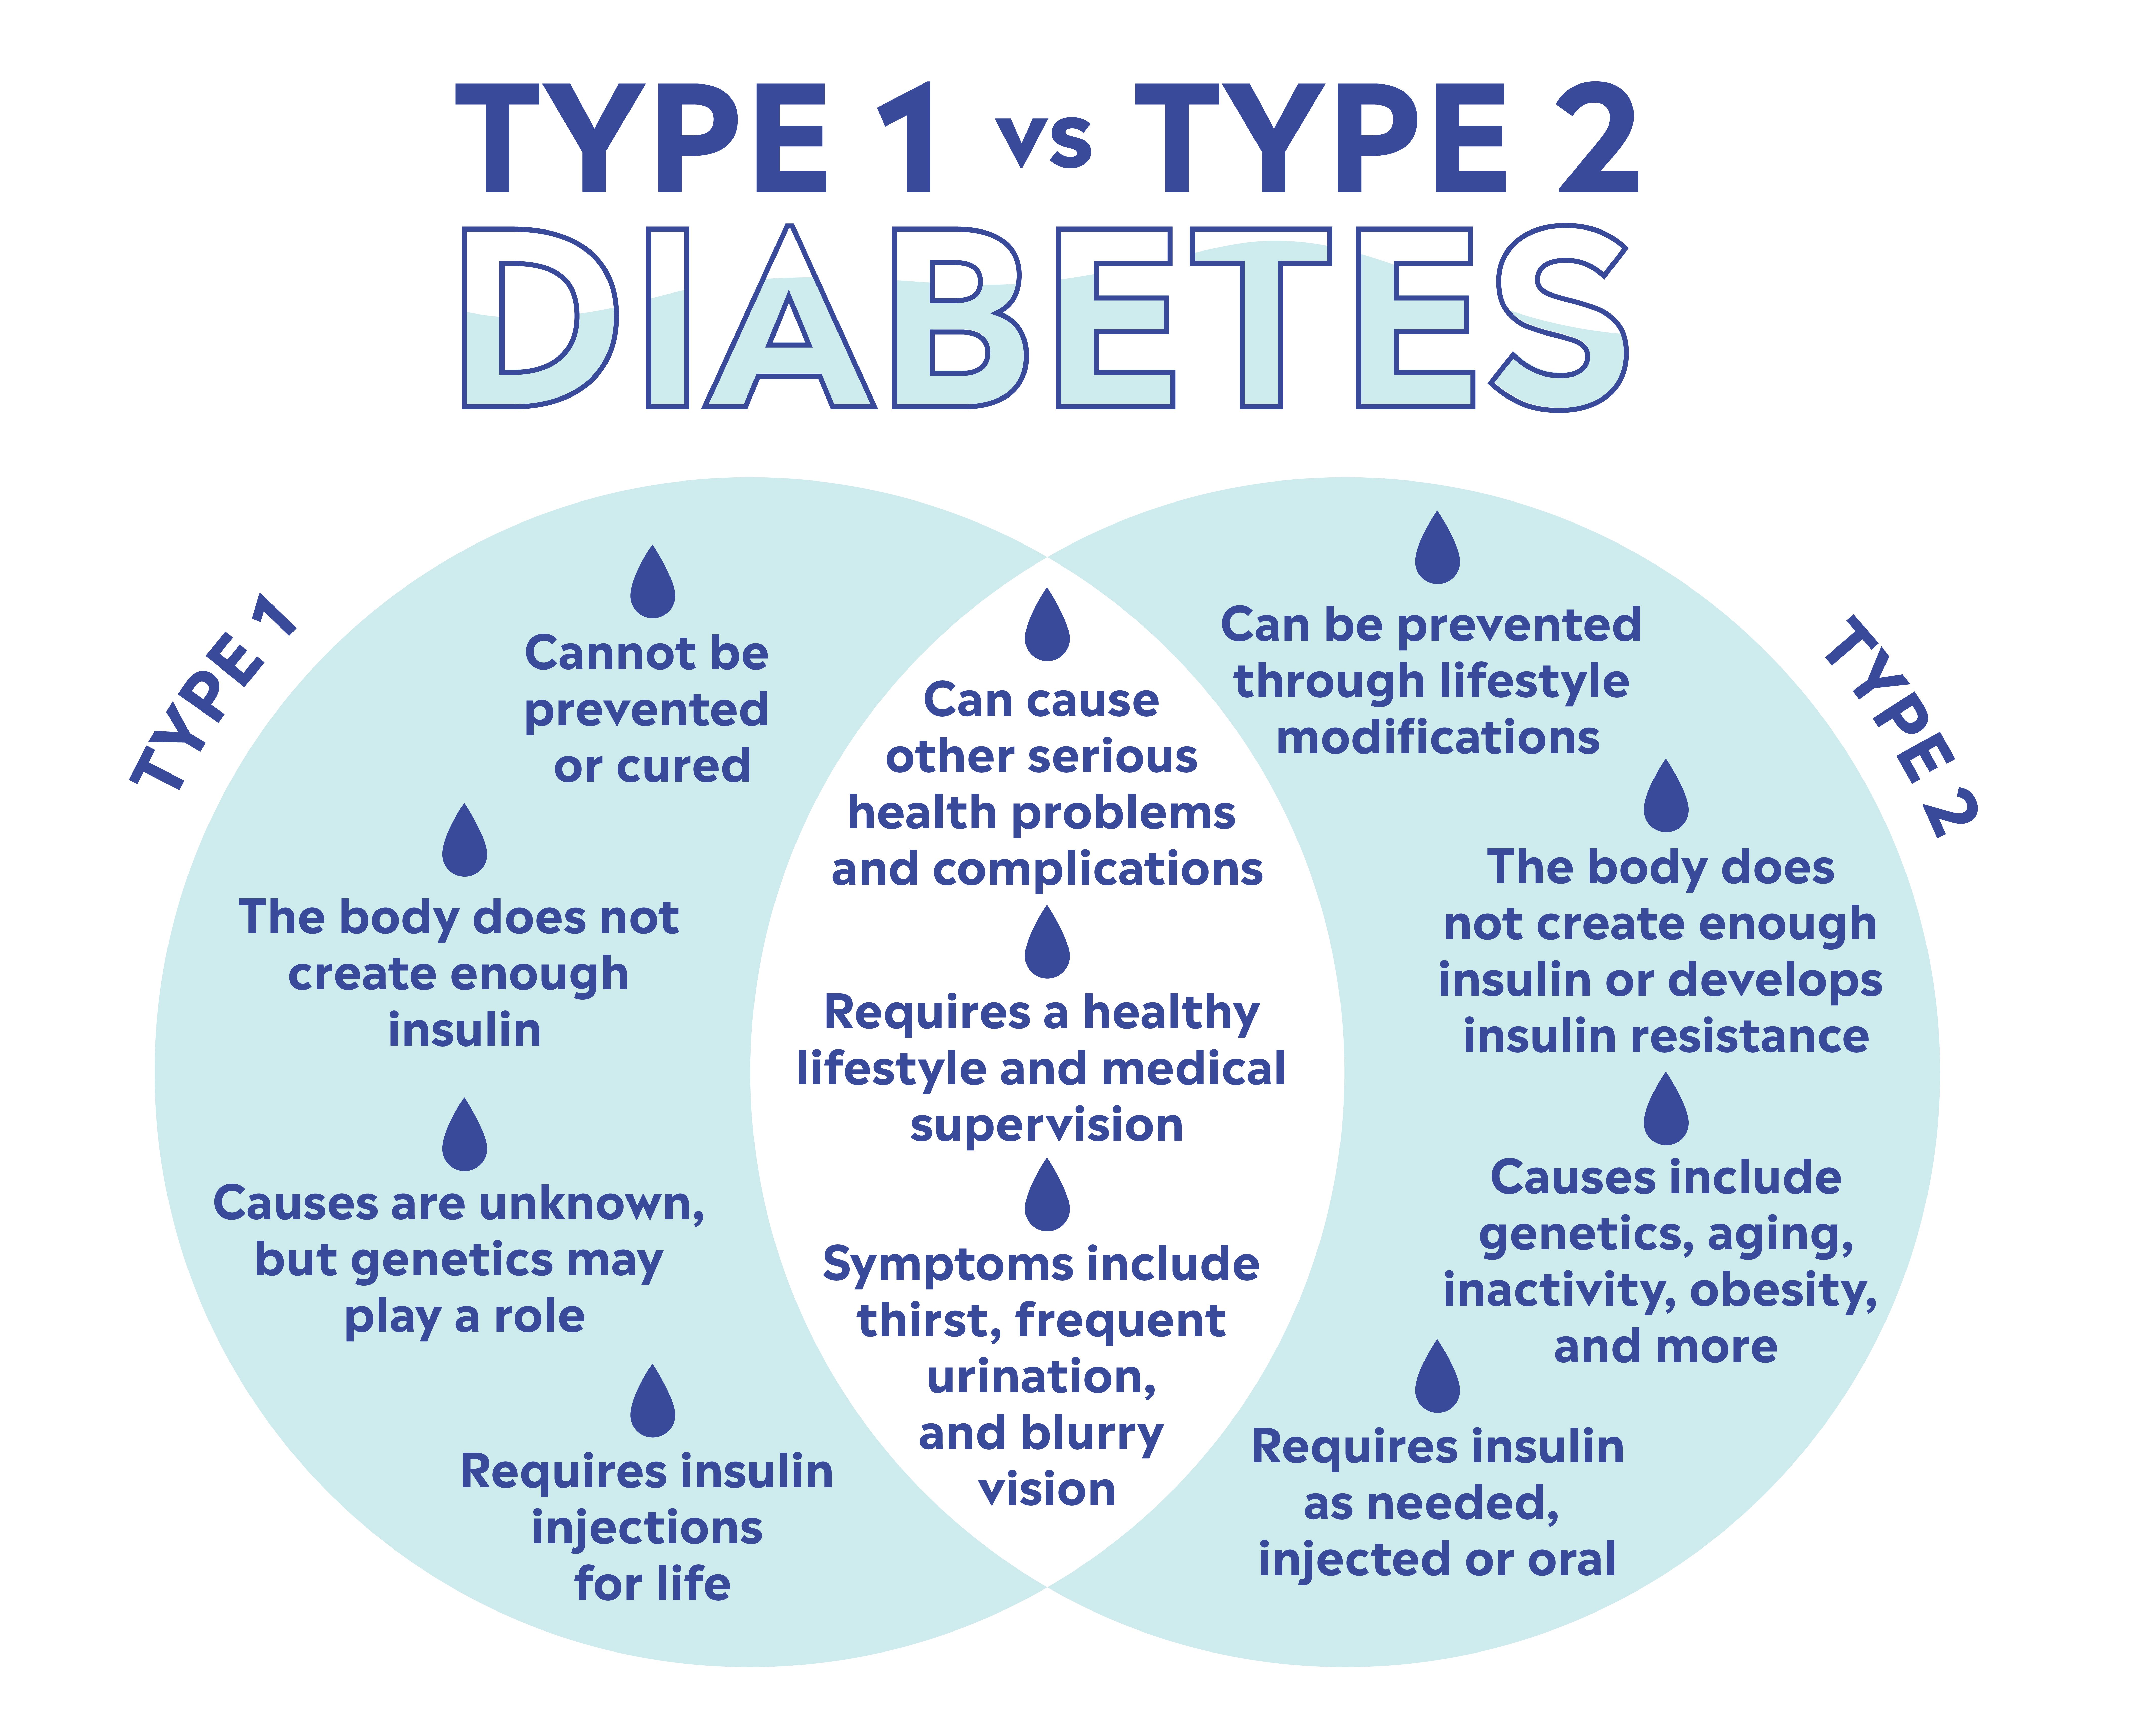 Type 2 Diabetes Symptoms, Causes, Risk Factors & Prevention